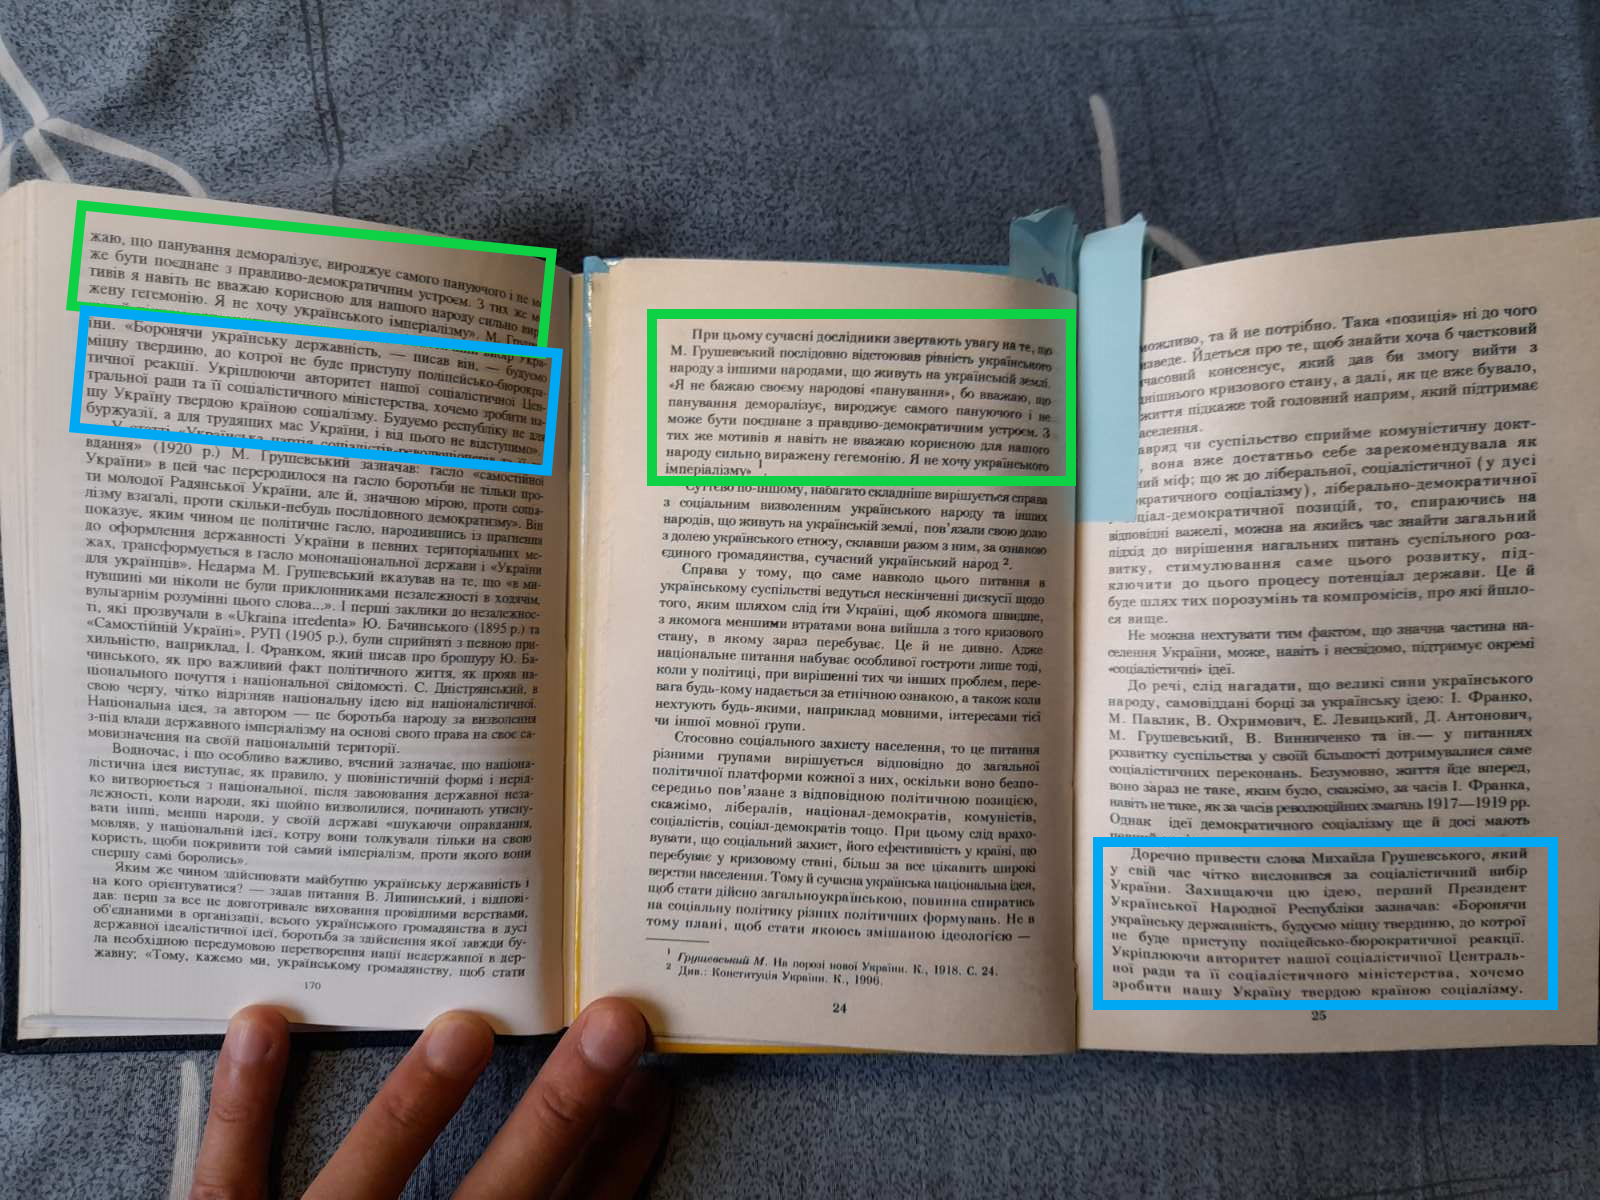 Сопоставление текста из учебника Рымаренко (слева) и работы Медведчука (справа)